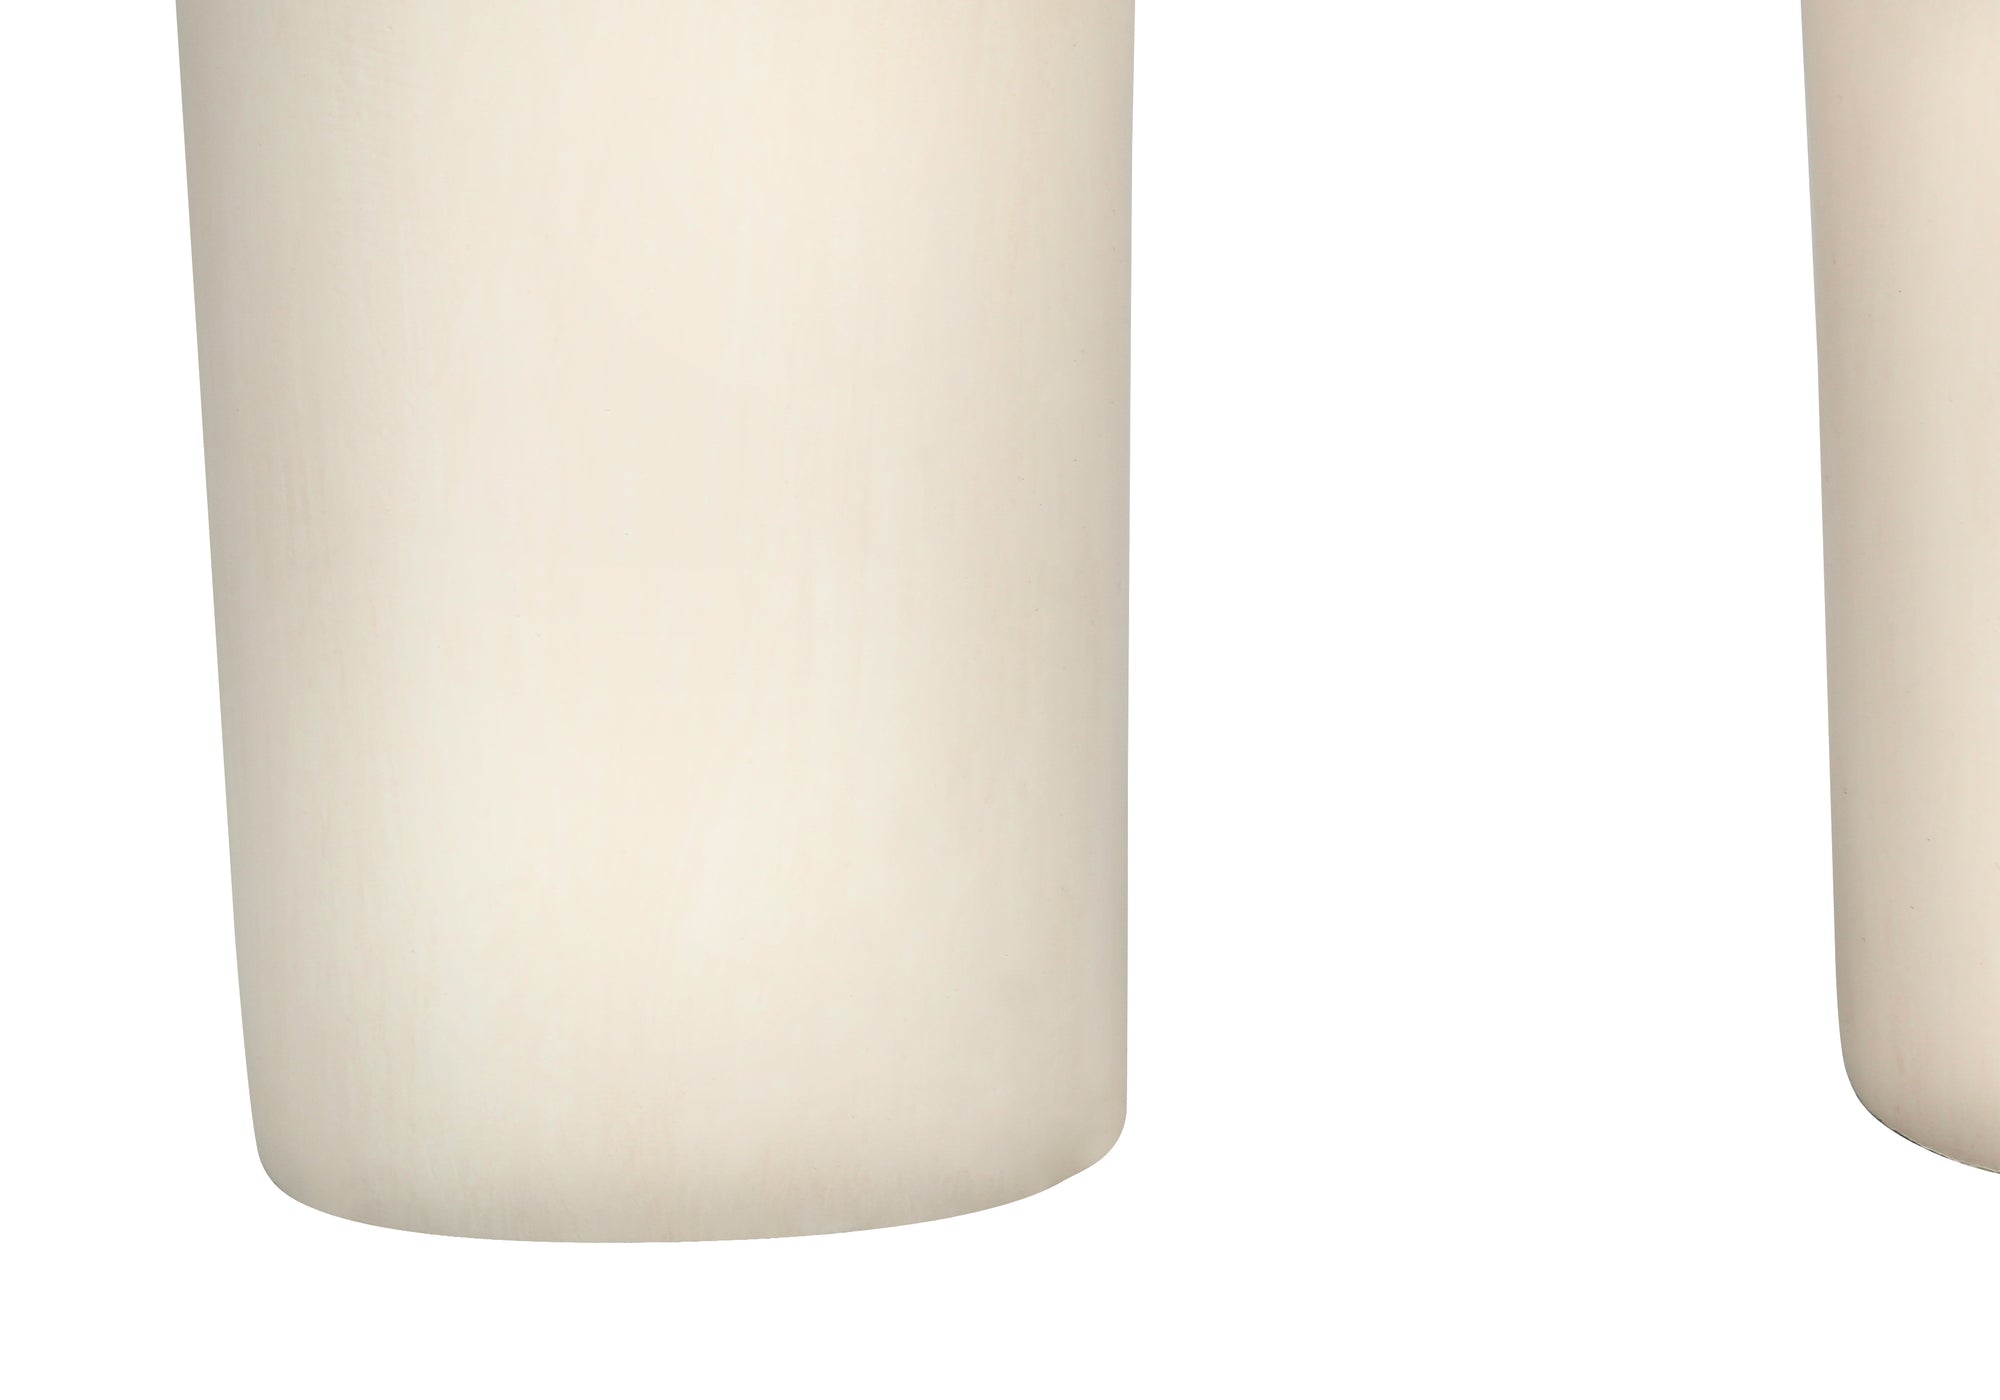 MN-629728    Lighting, 25"H, Table Lamp, Cream Resin, Beige Shade, Modern